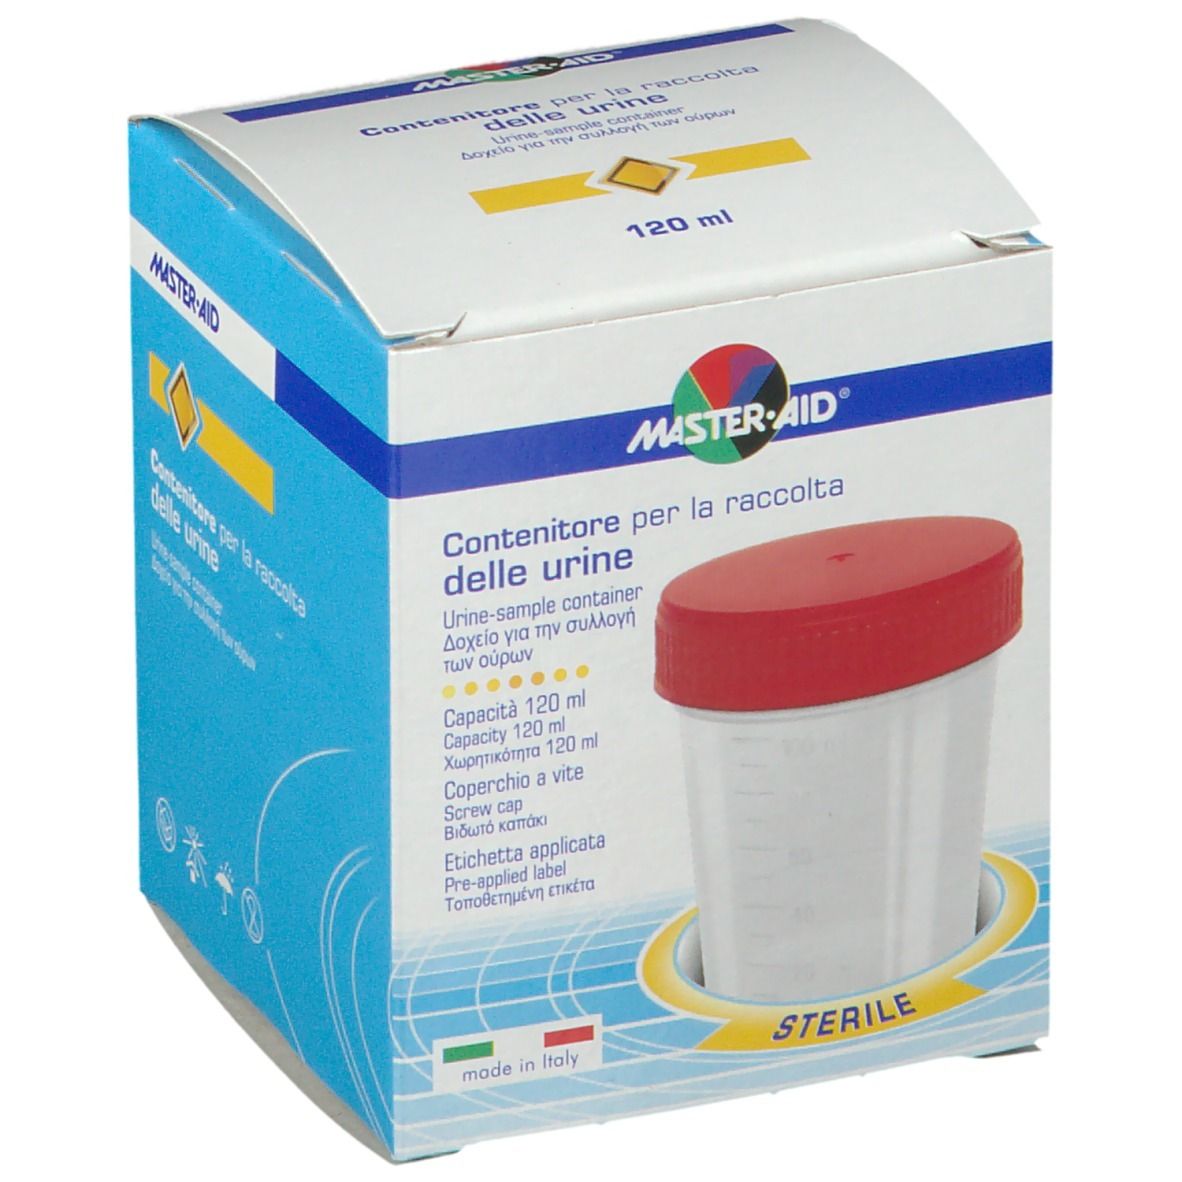 Master-Aid® Contenitore per la raccolta delle urine